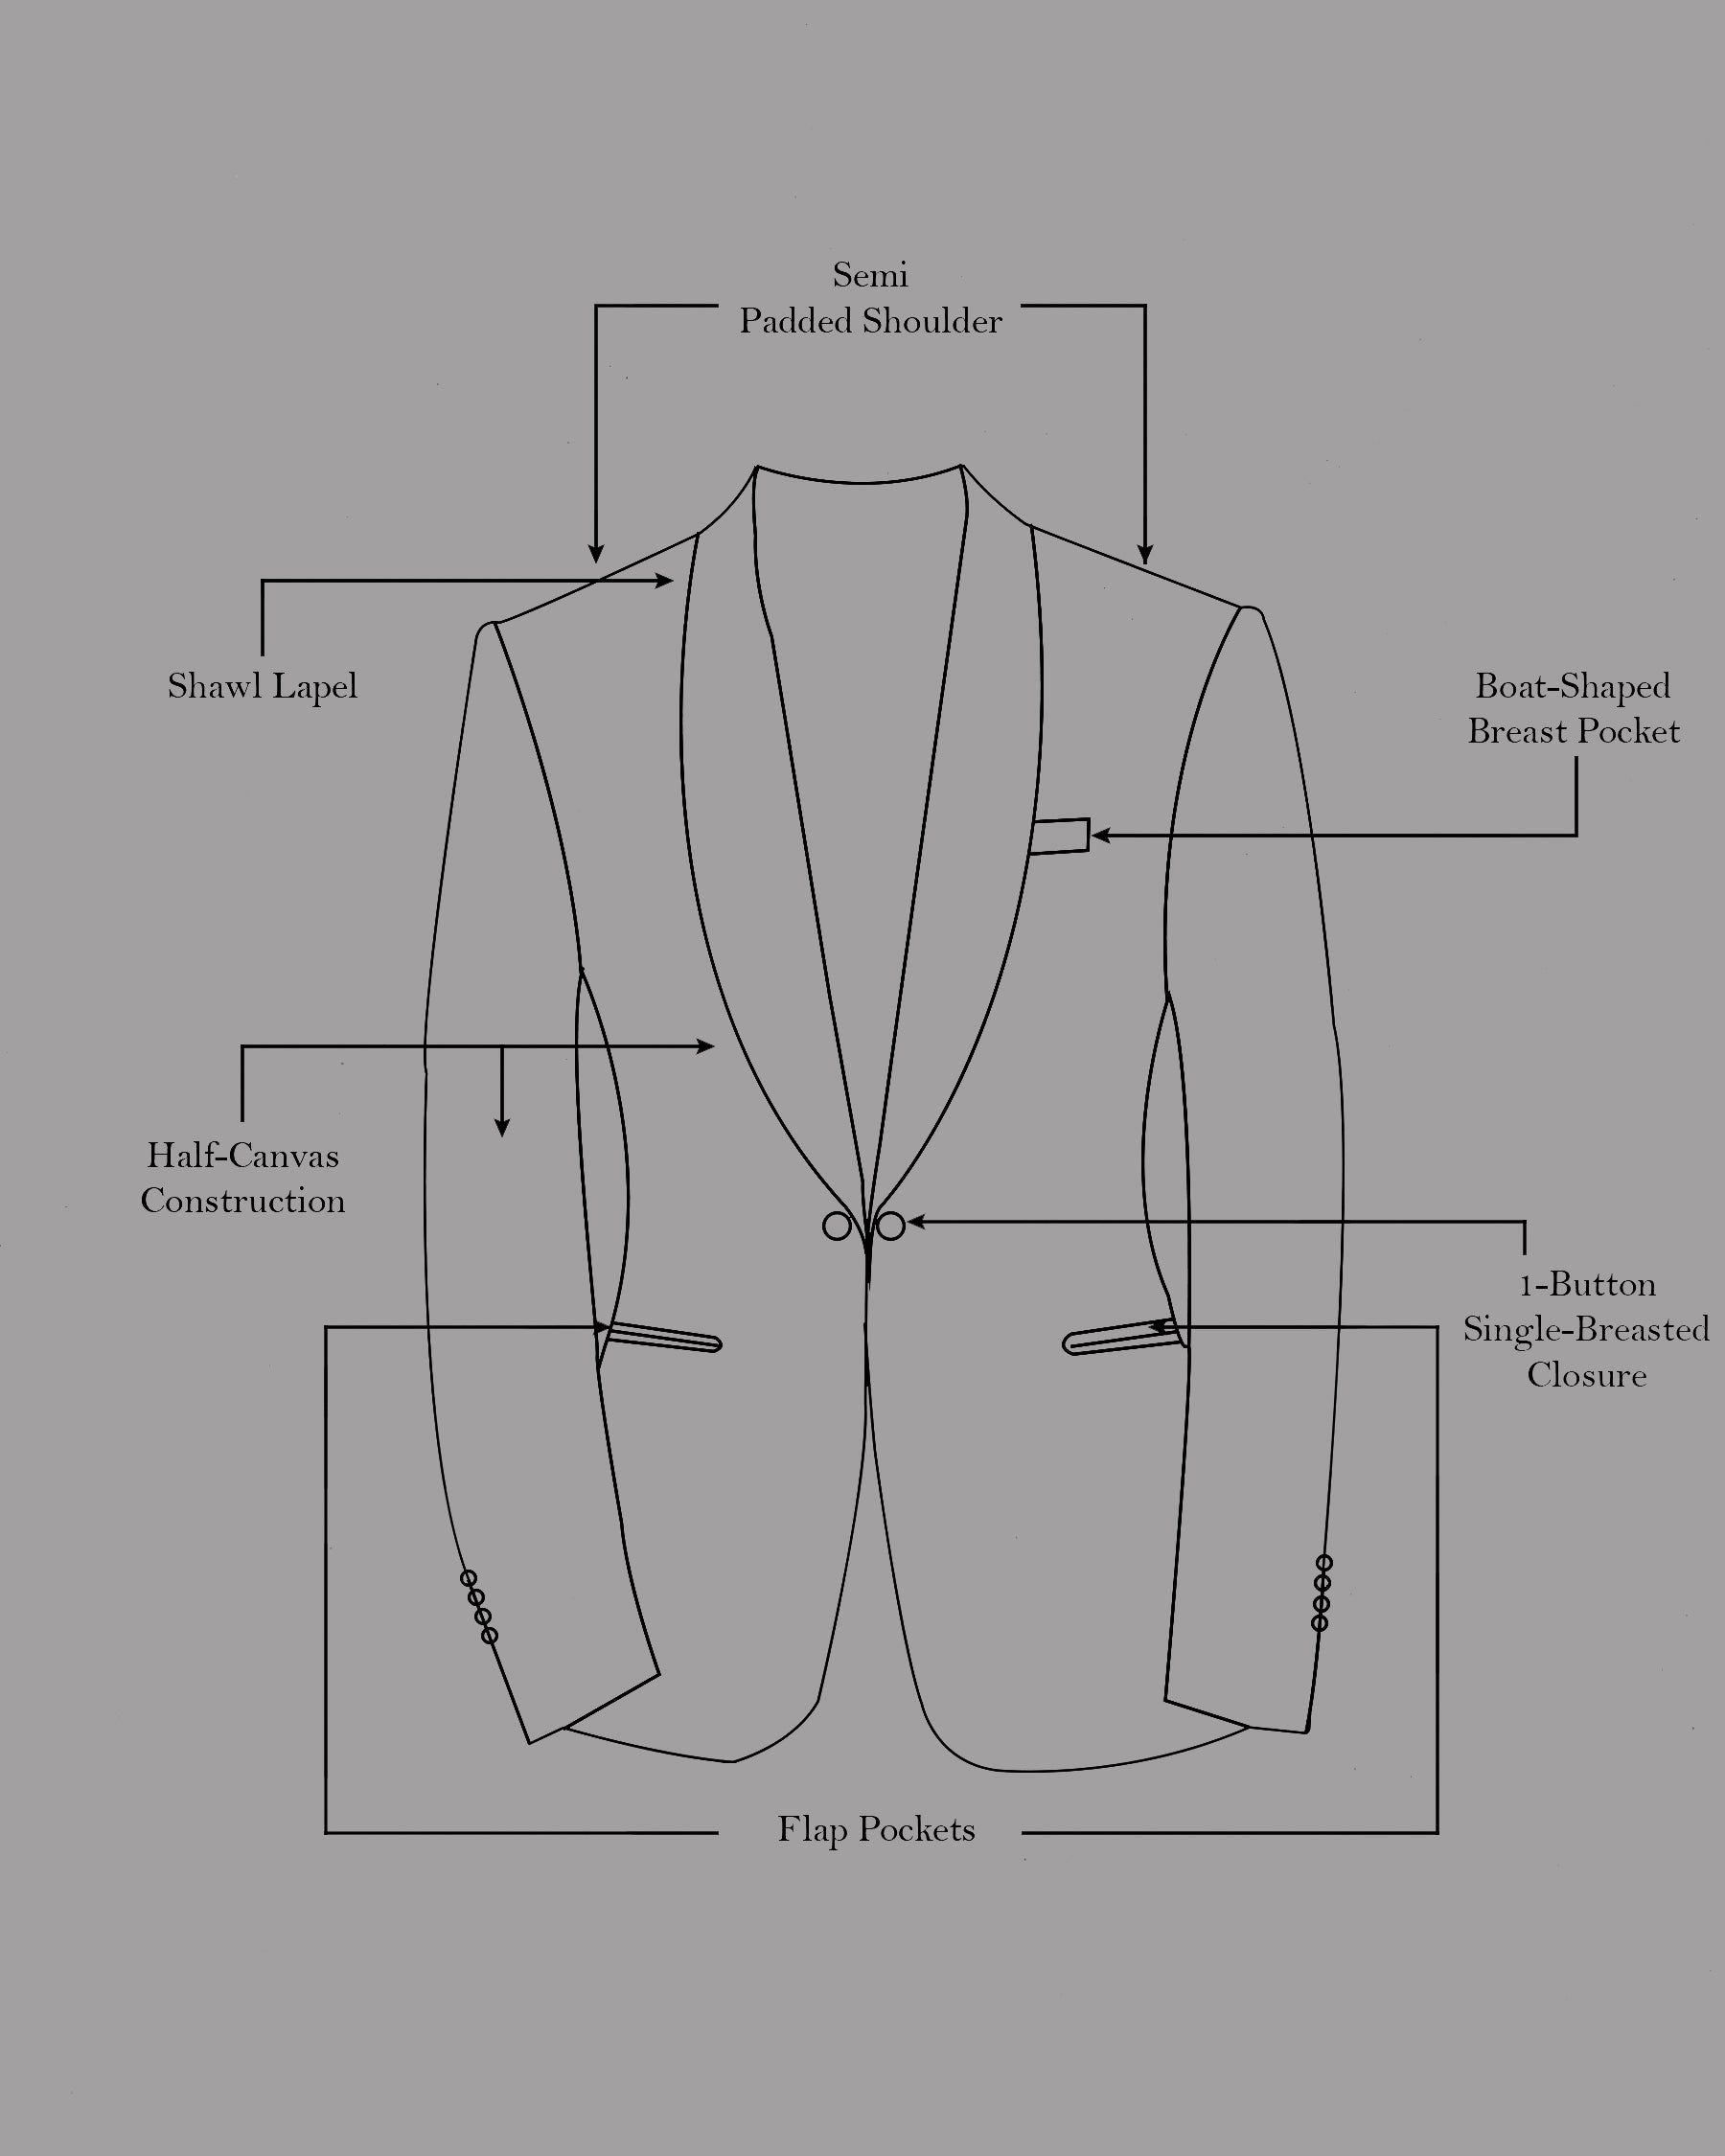 Jade Black Stretchable Premium Cotton Tuxedo traveler Suit